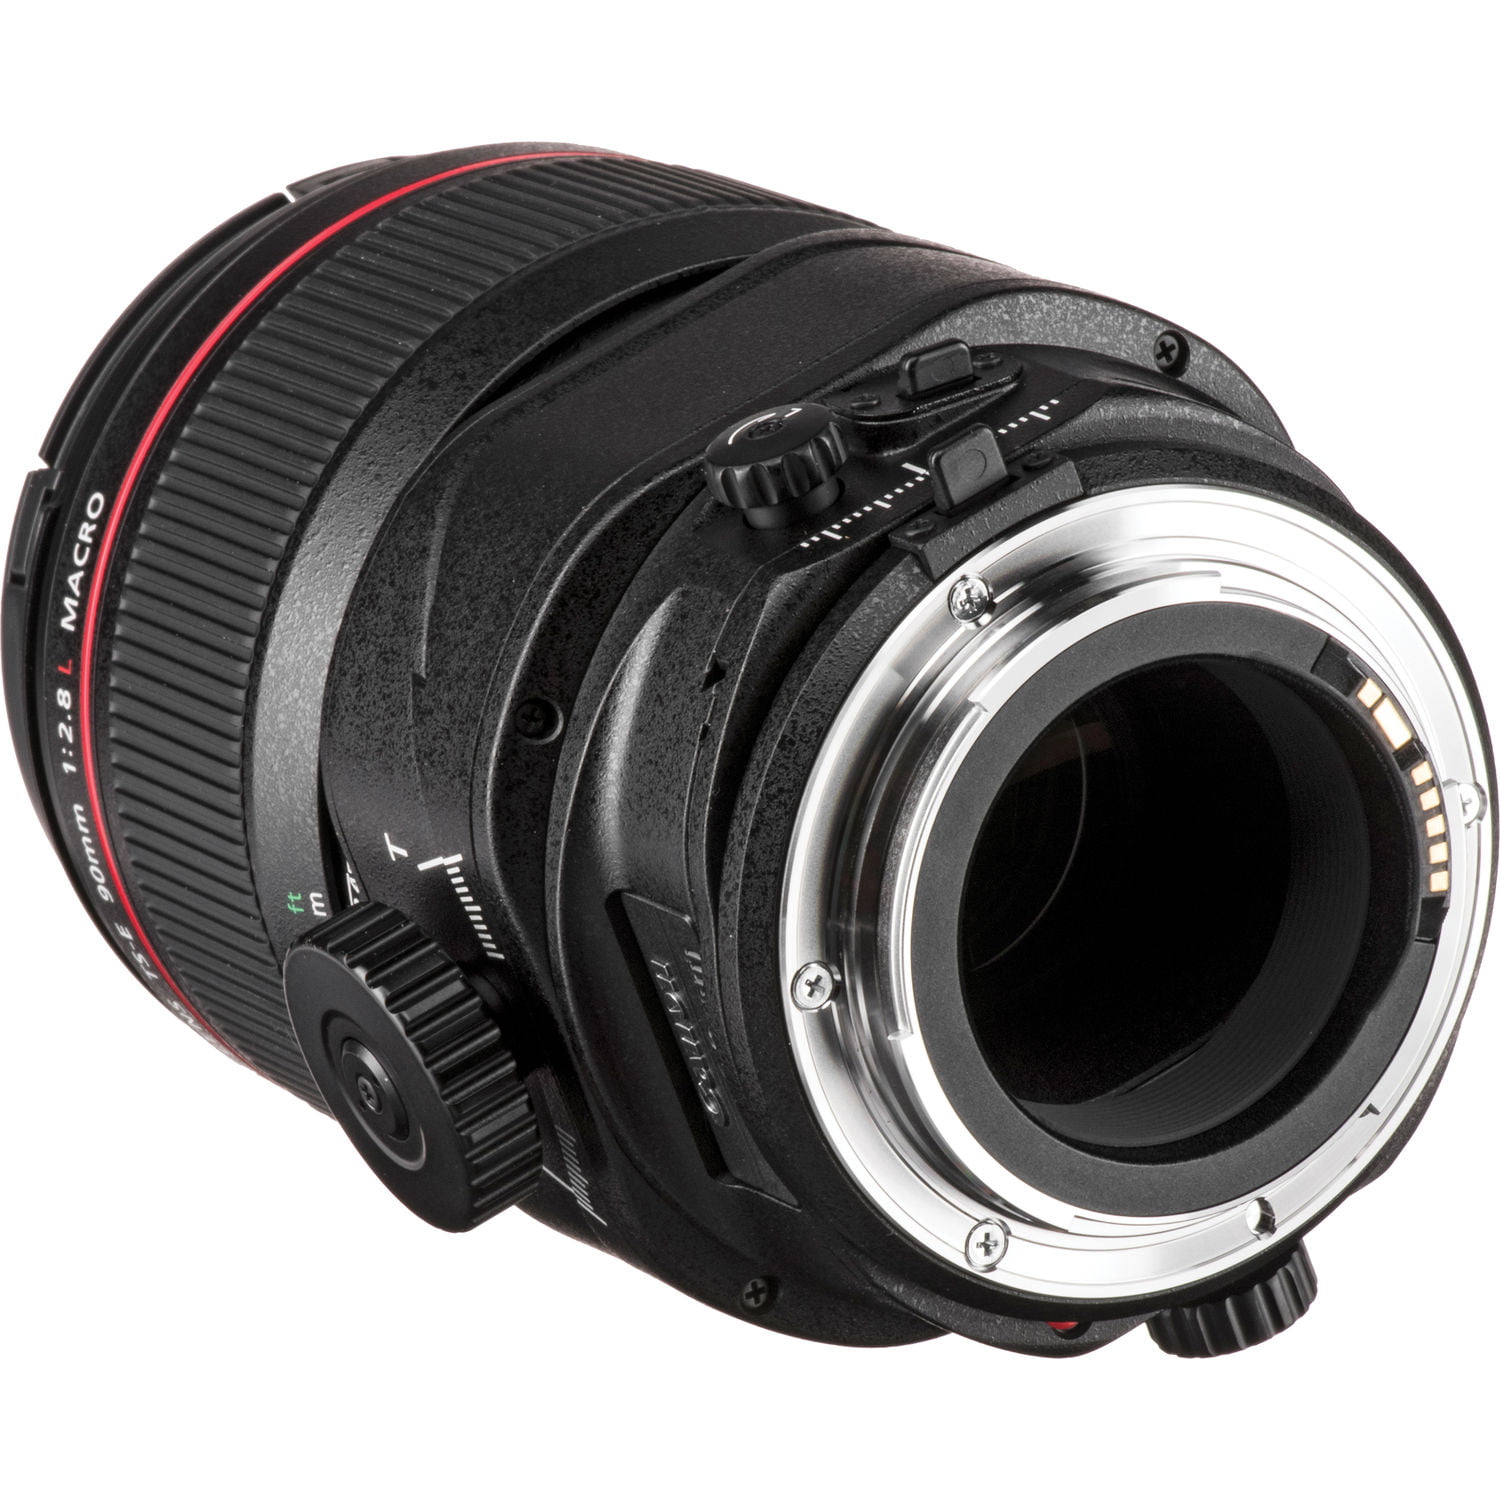 Canon TS-E 90mm f/2.8L Macro Tilt-Shift Lens